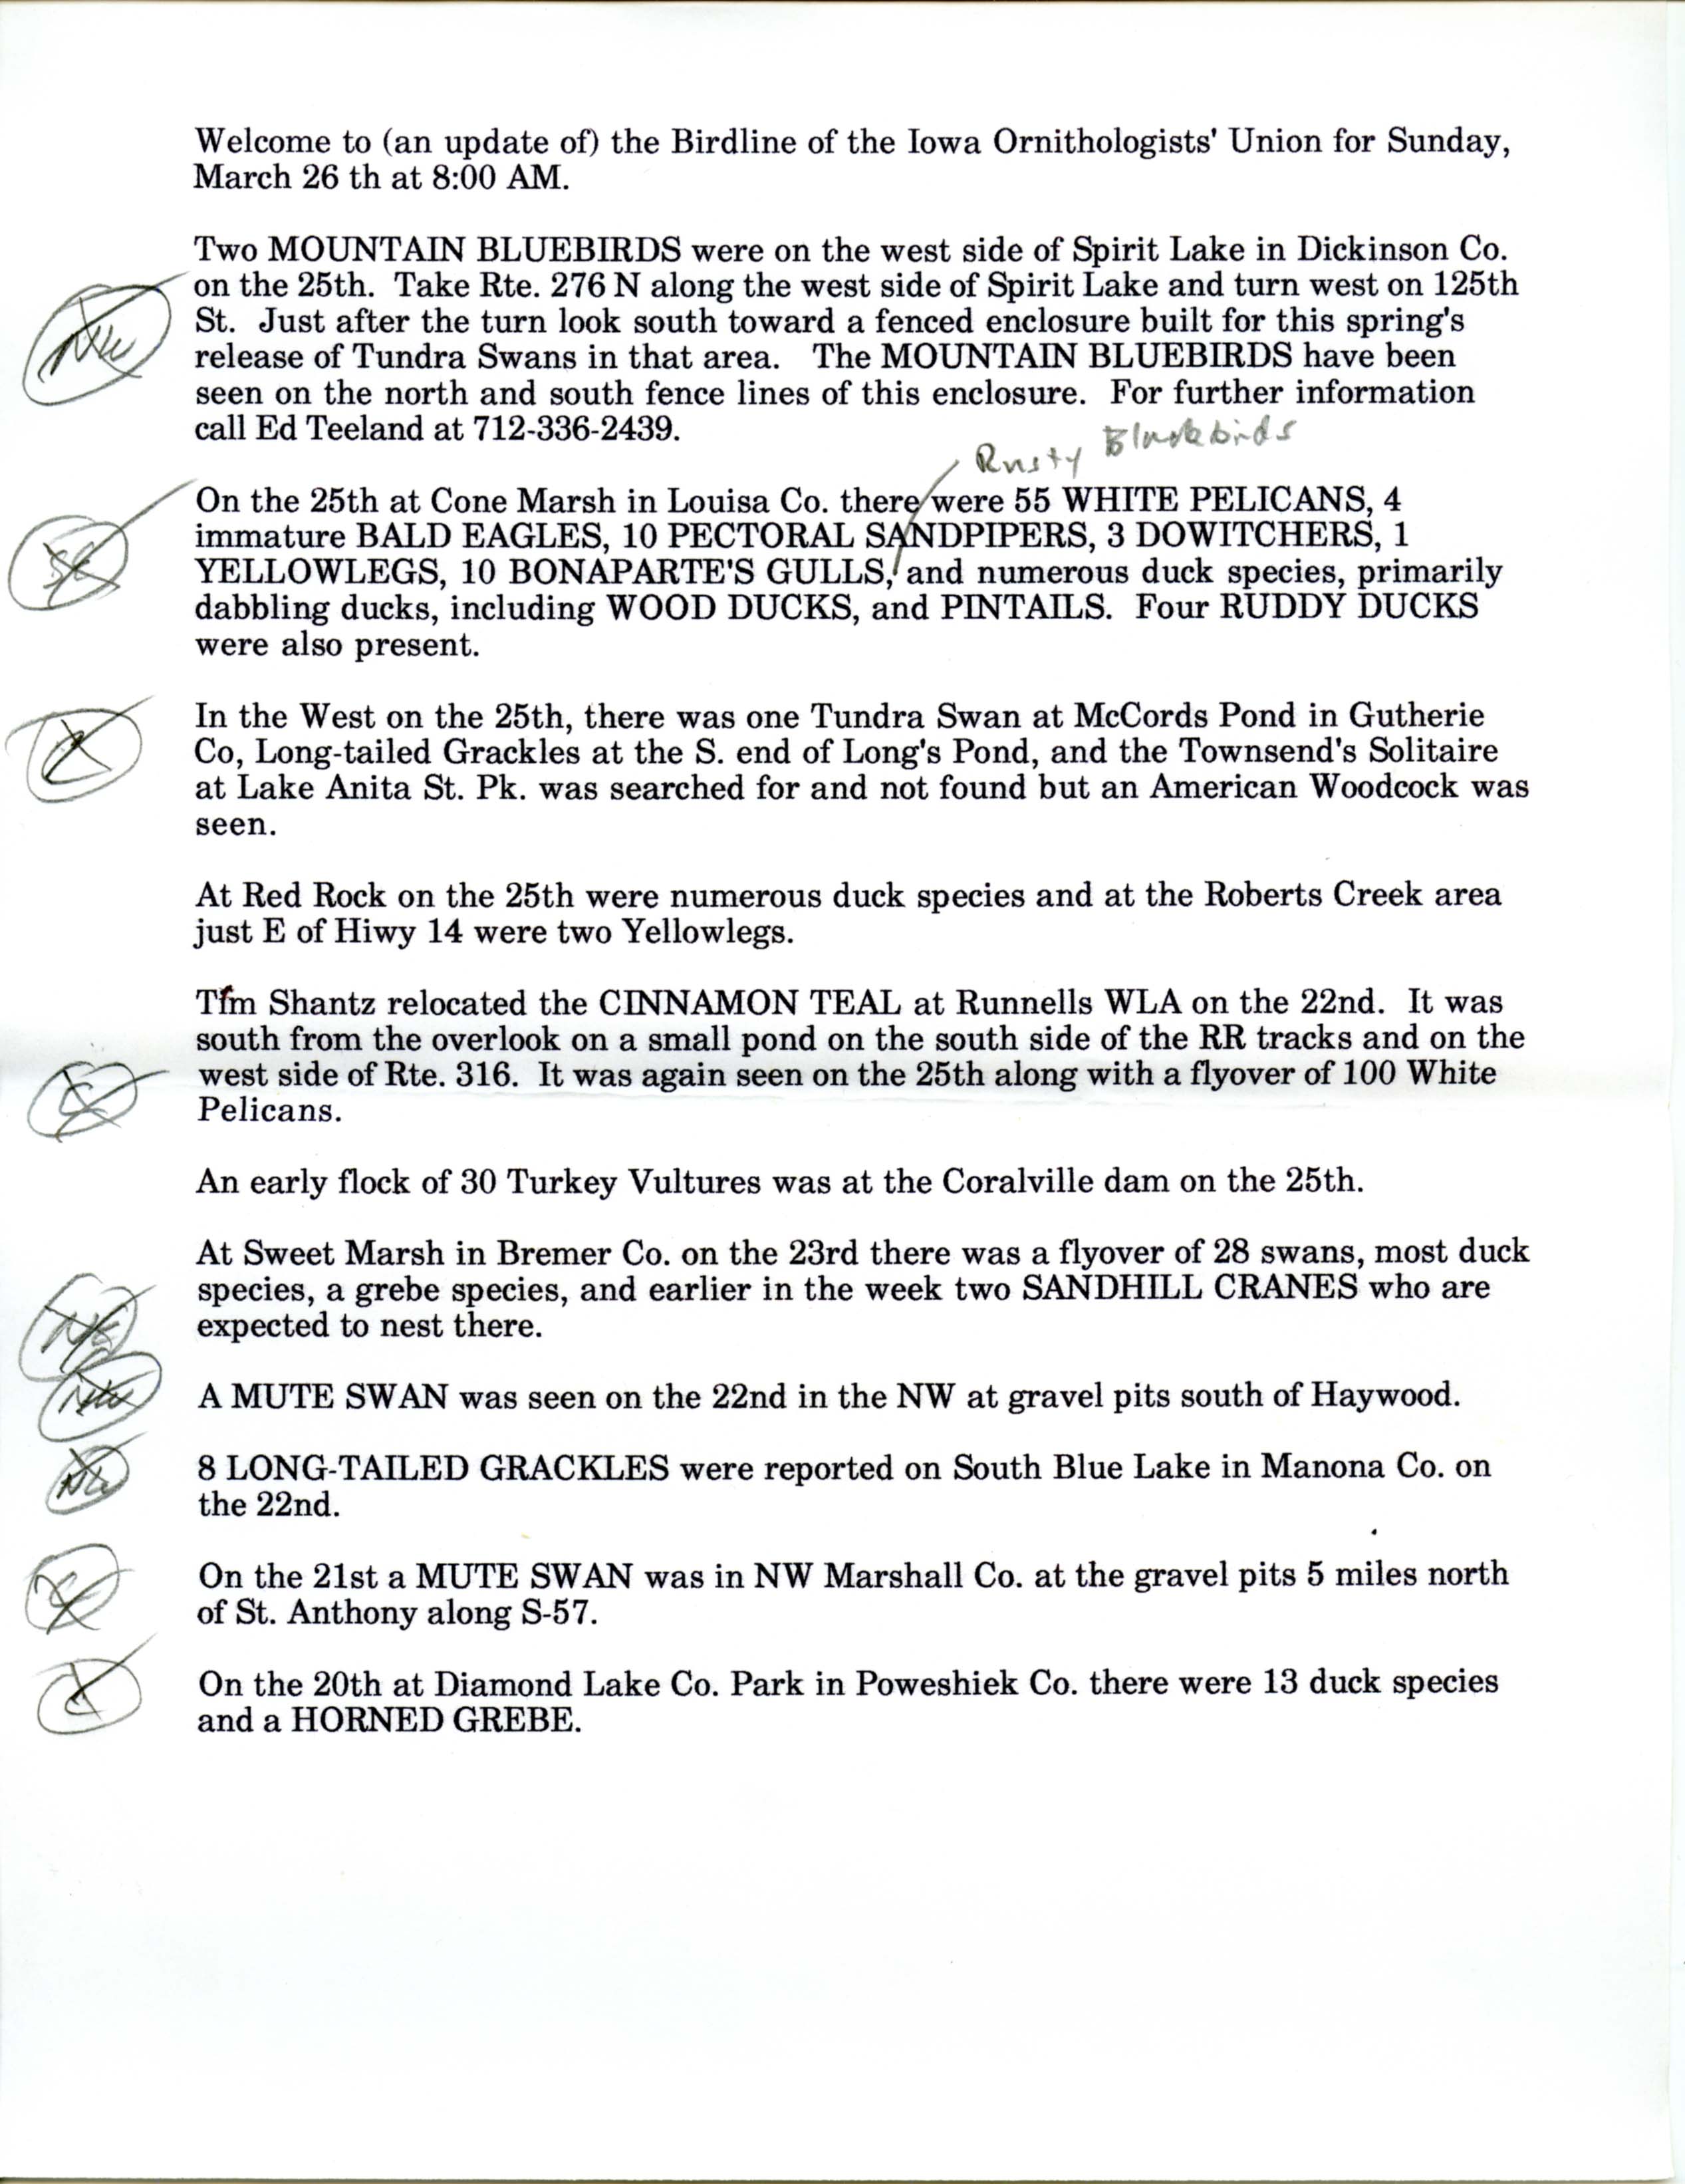 Iowa Birdline update, March 20-26, 1995